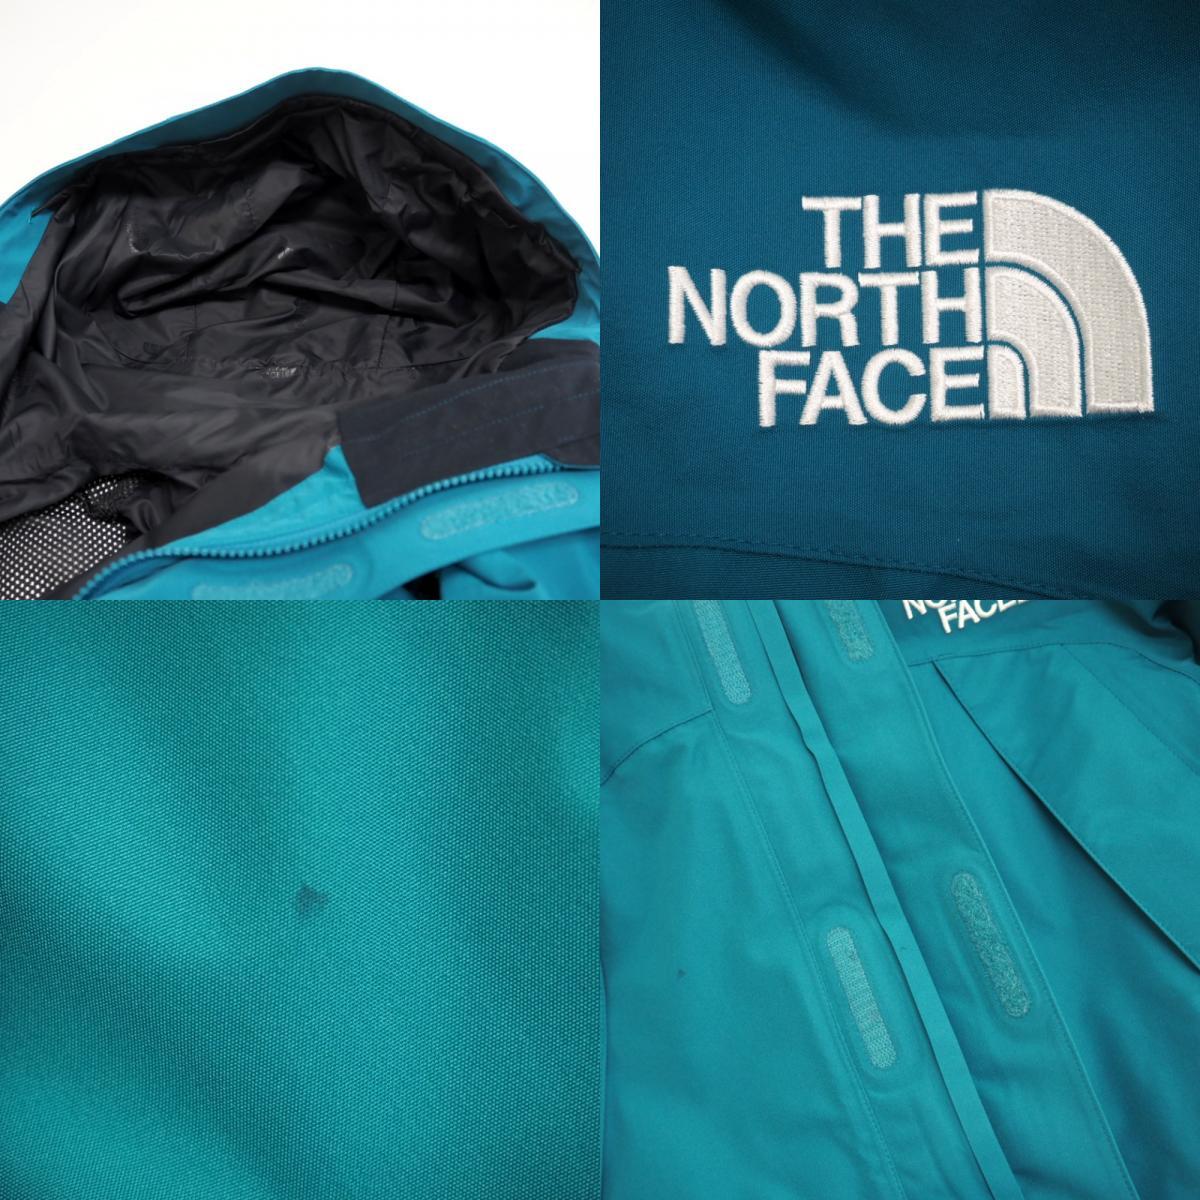 THE NORTH FACE/ザノースフェイス NP62002Z ナイロン ナイロンジャケット ブルー メンズ ブランド